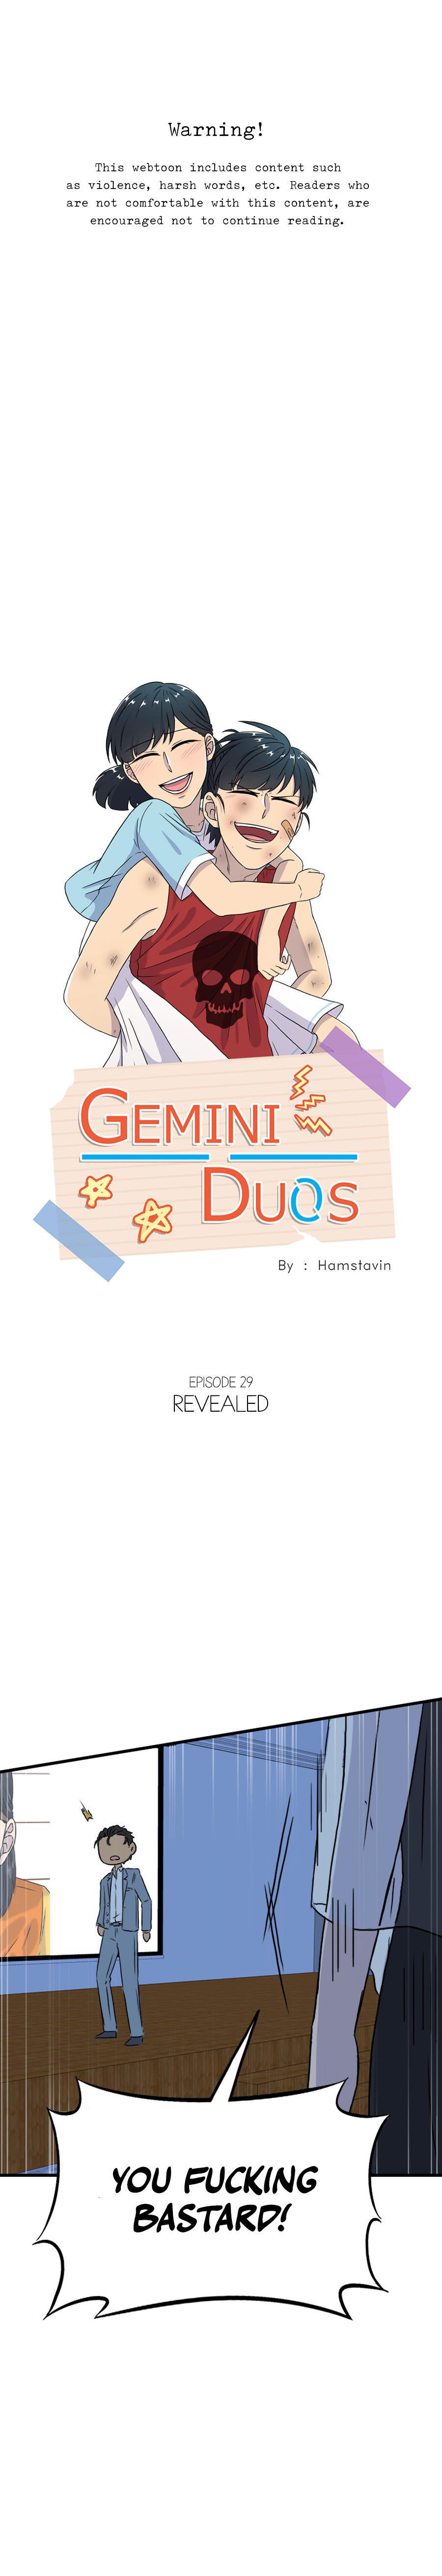 Gemini Duos - Page 2